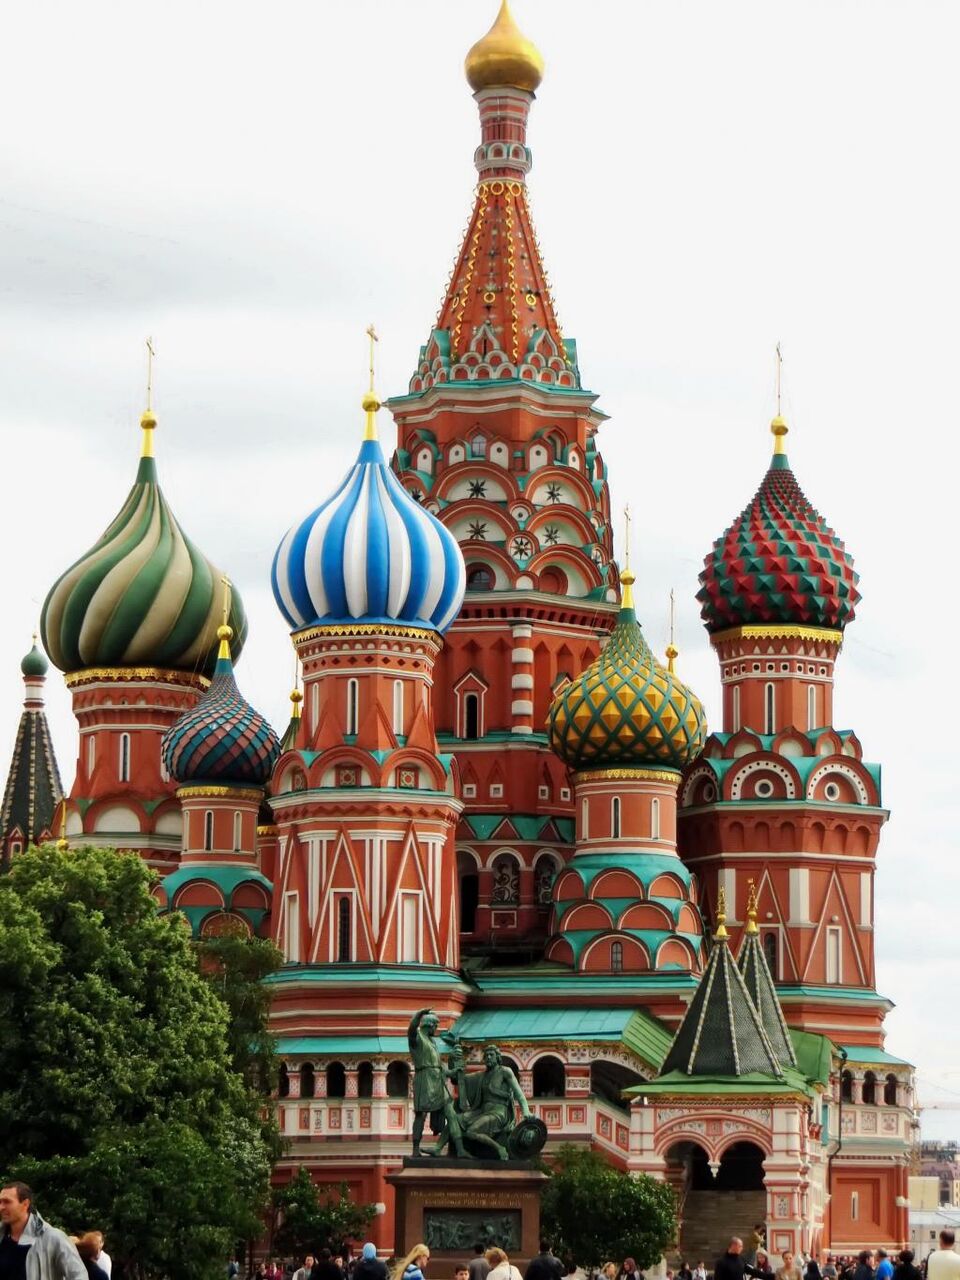 ロシア モスクワ 赤の広場 教会 バジル イコウイーブ 聖バジルのテストに適しクニミネーシリコーン新聞nnの壁紙大聖堂 宗教的 高精細の画像 材料を入力します 壁紙